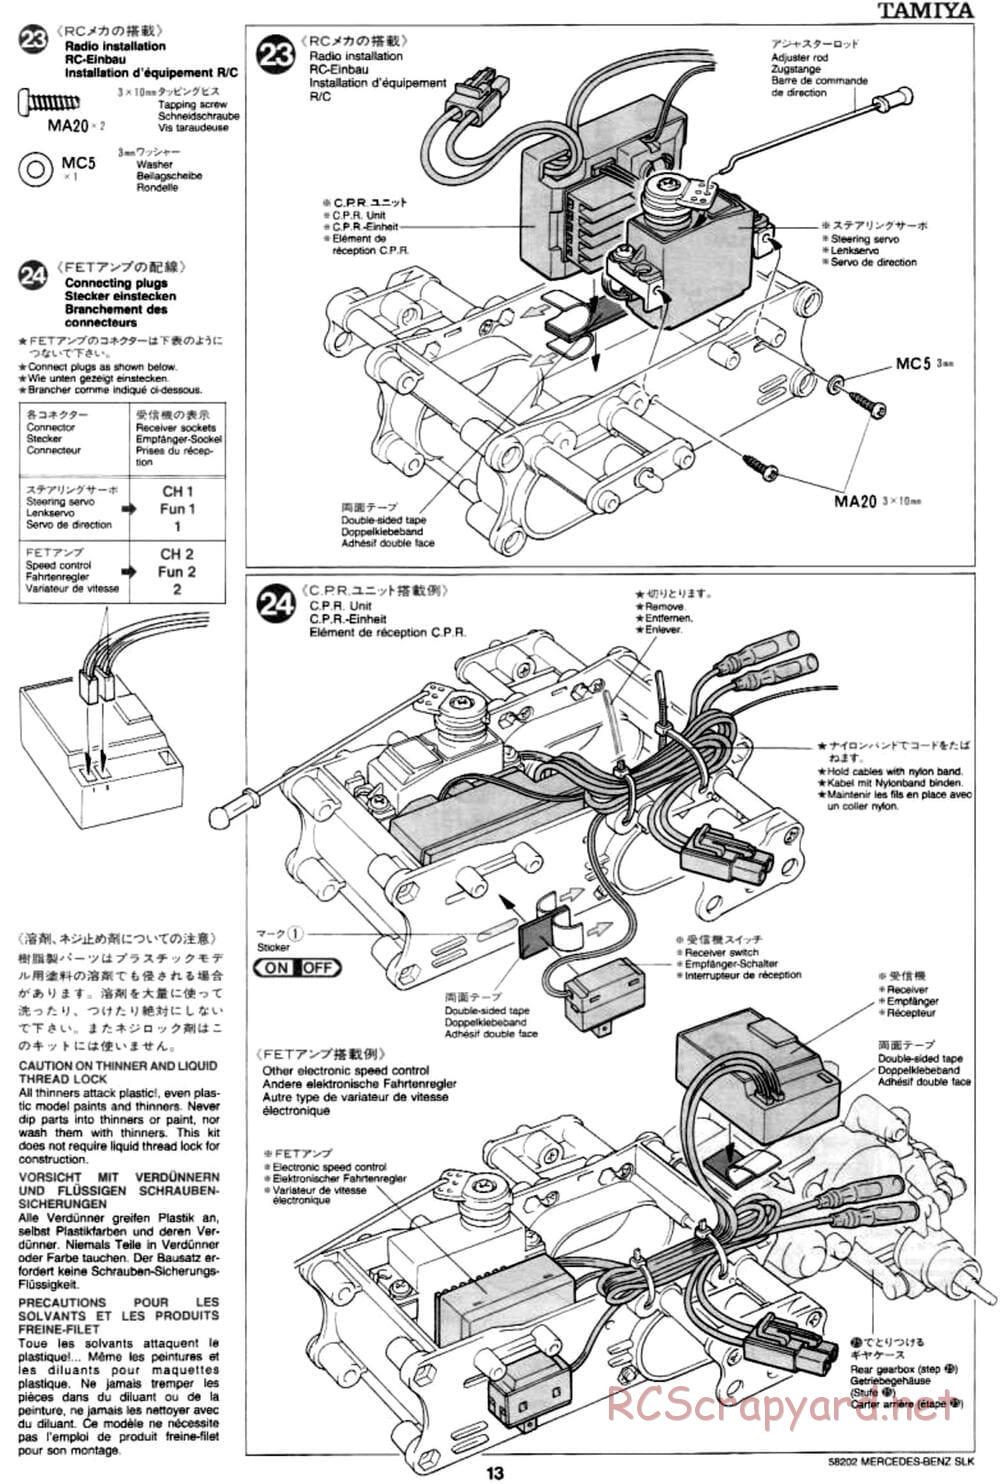 Tamiya - Mercedes-Benz SLK - M02L Chassis - Manual - Page 13